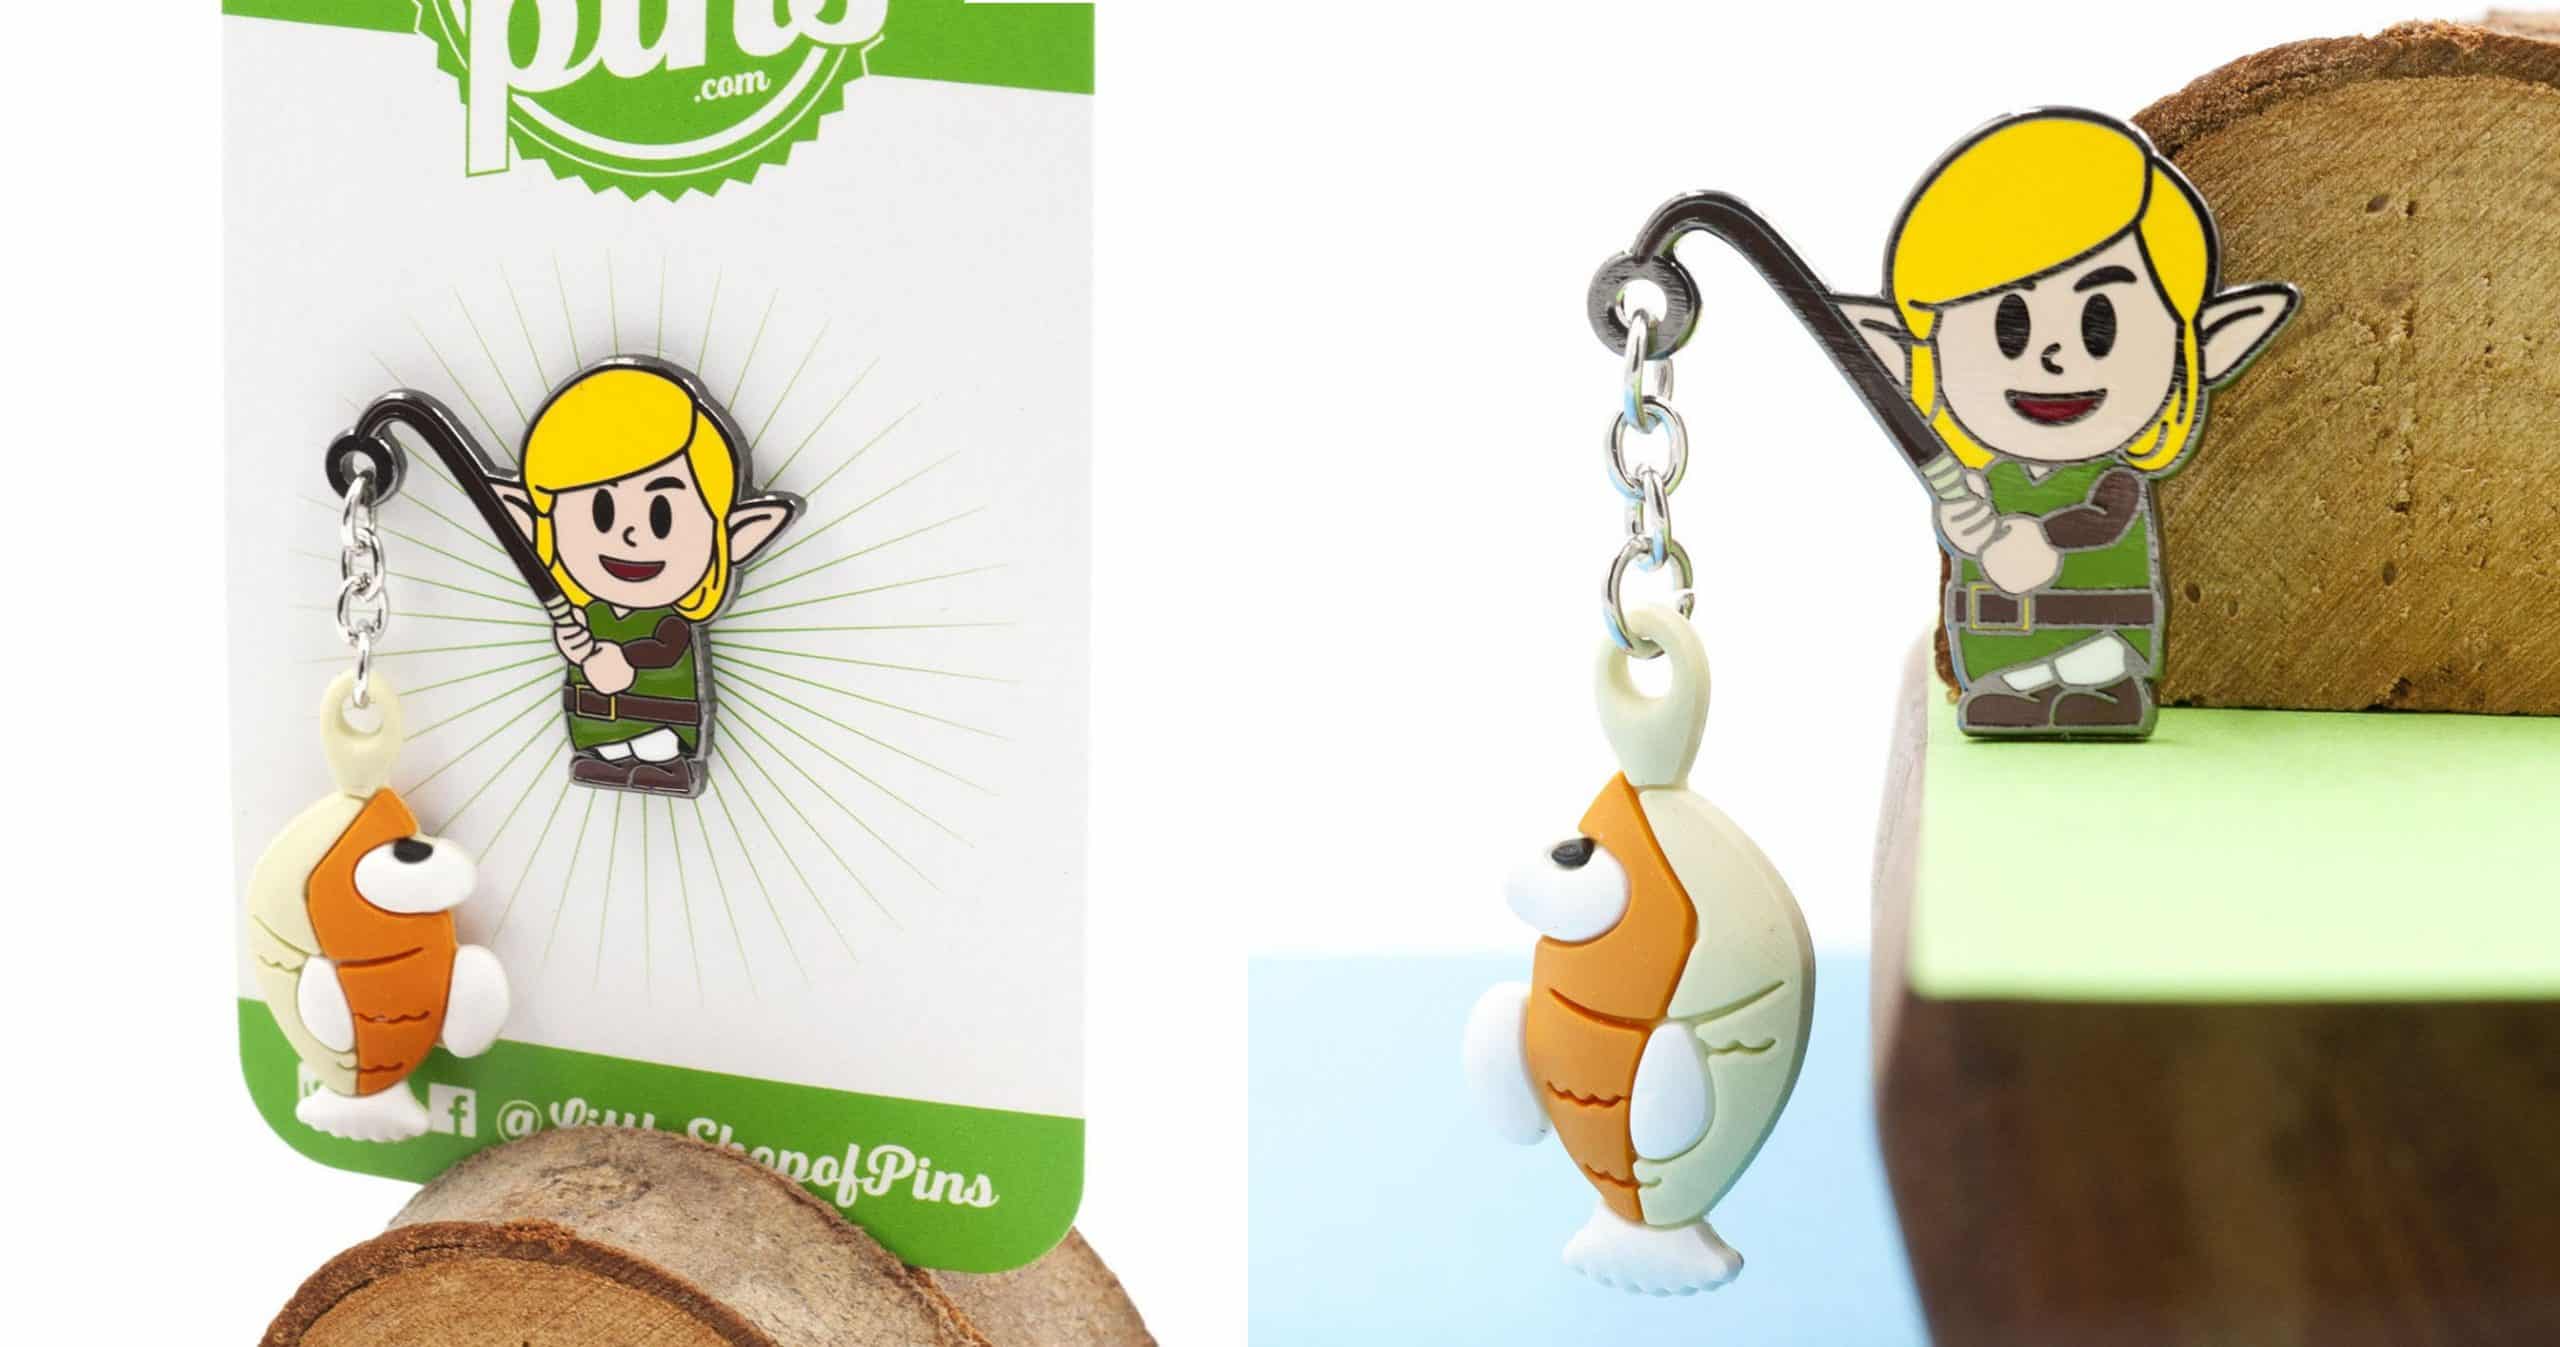 Zelda Link's Awakening Fishing Pin